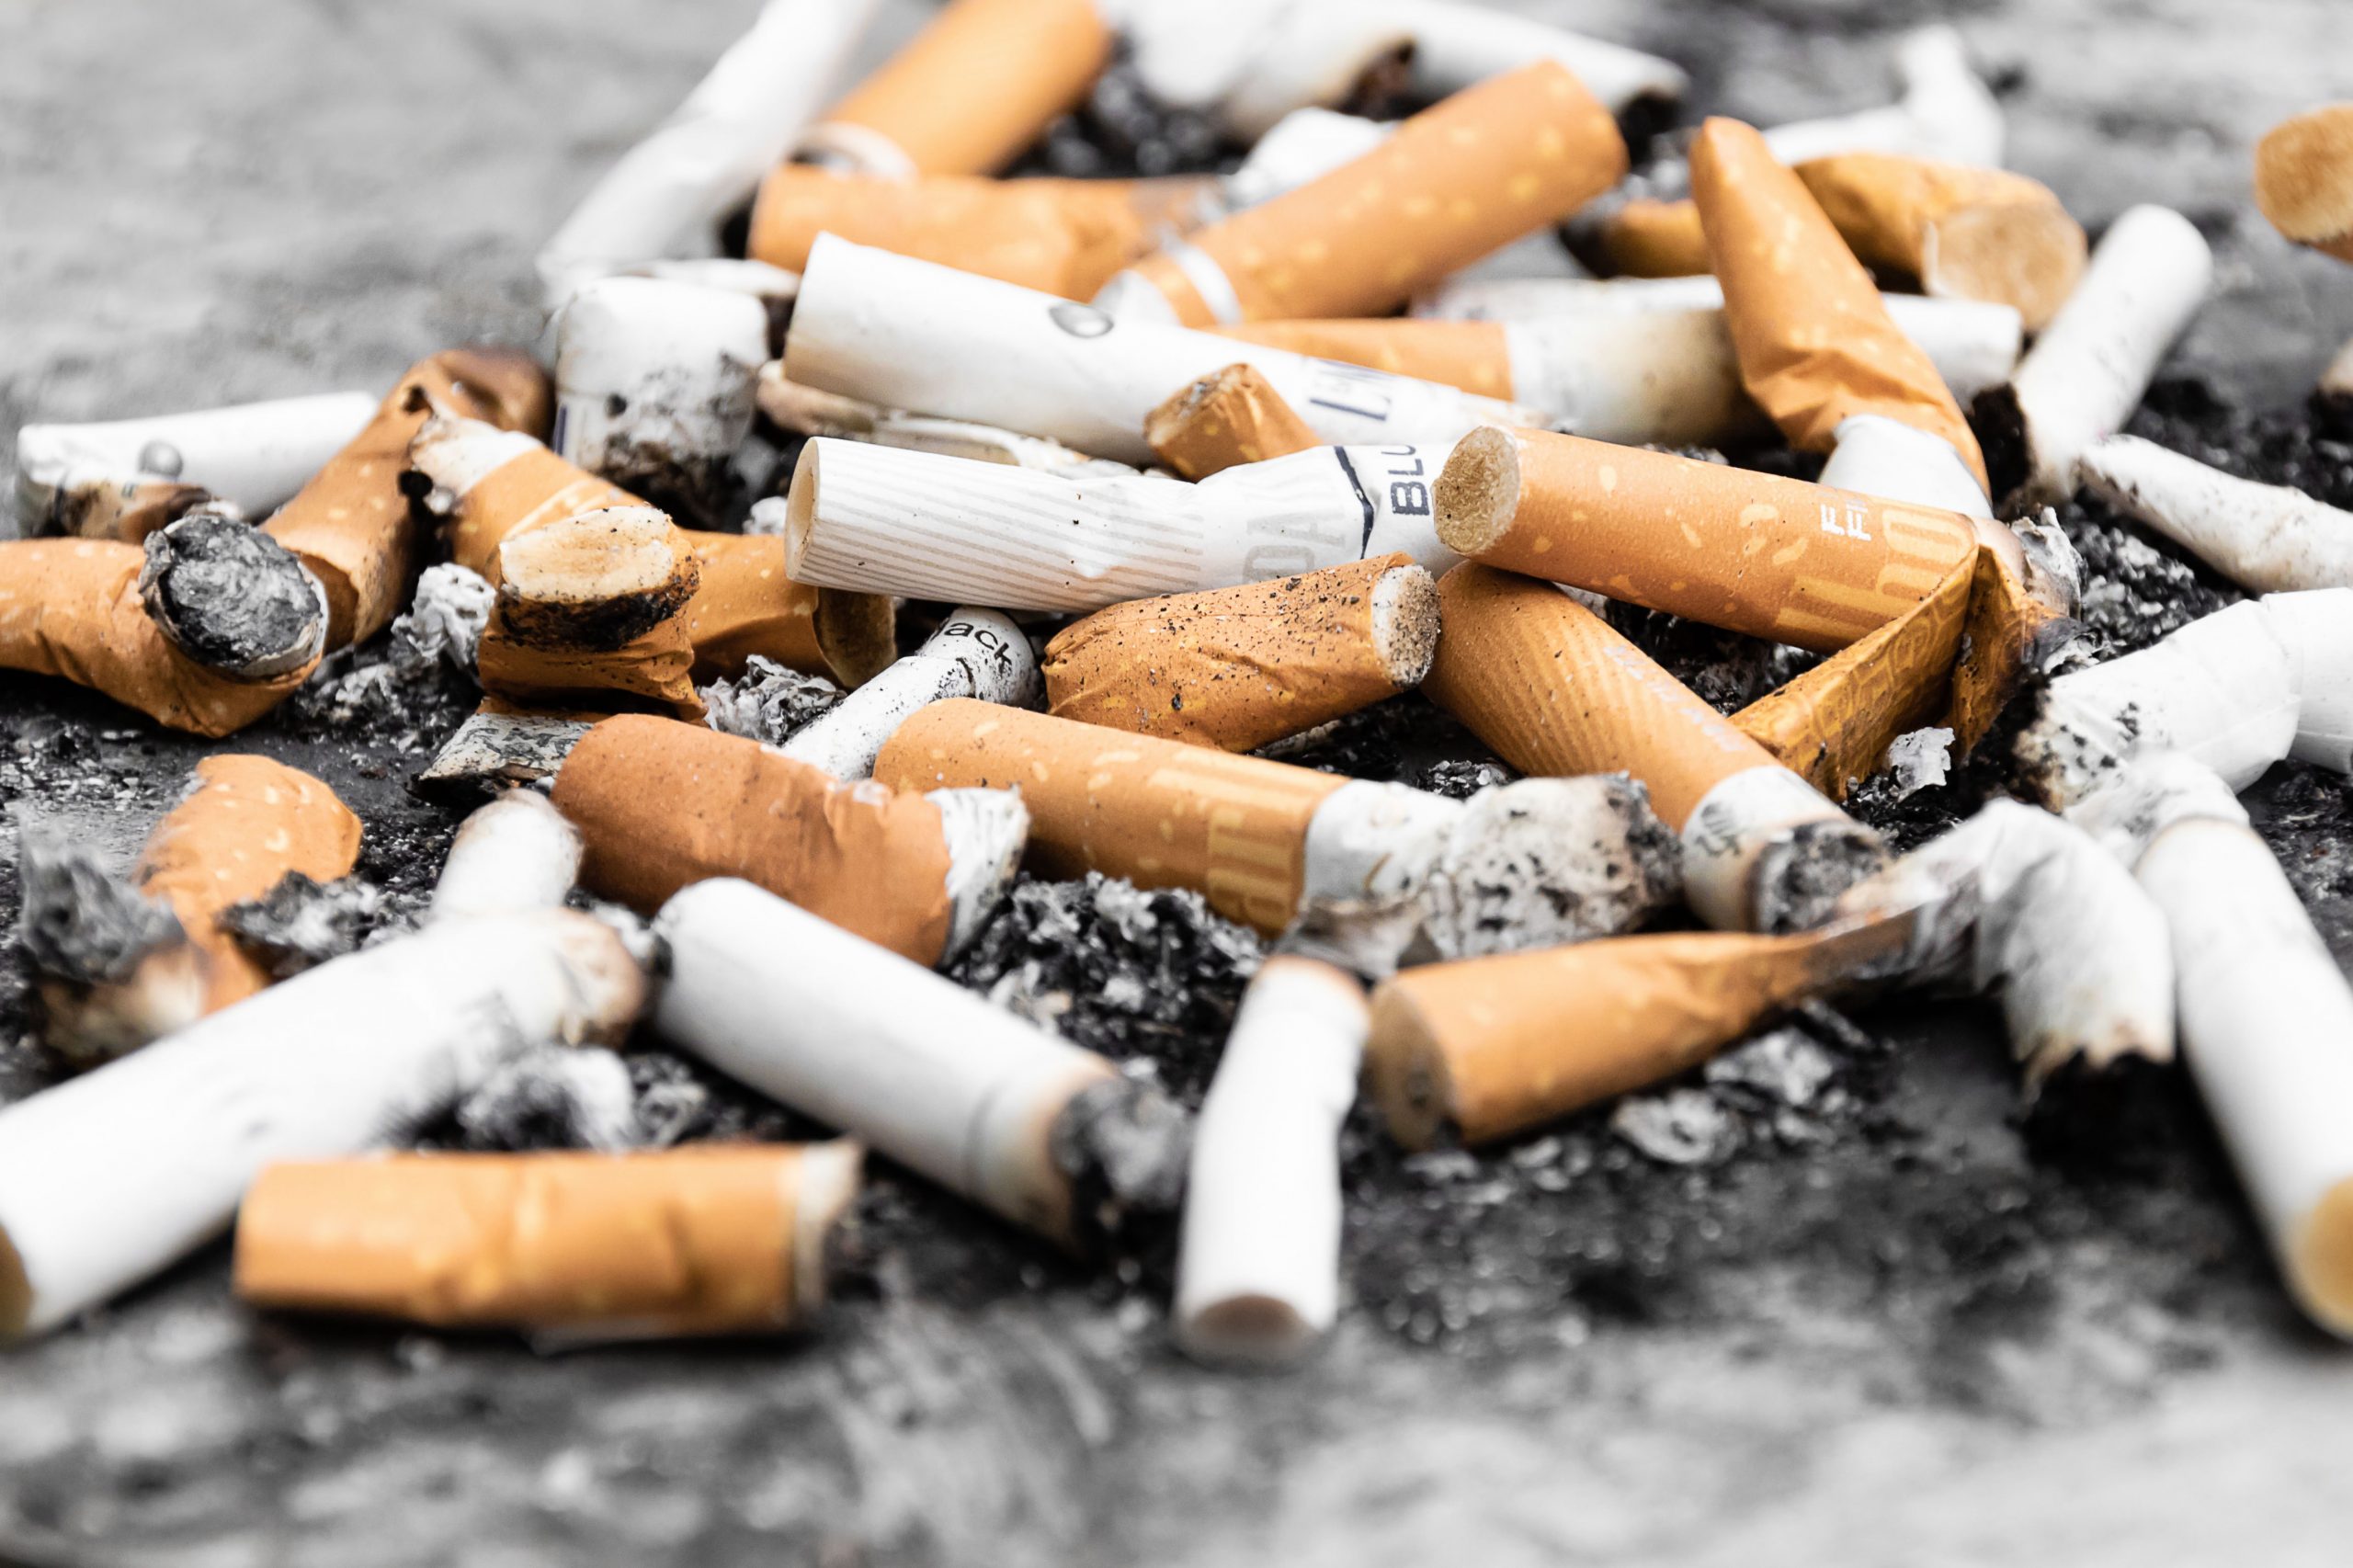 WHO: Industri tembakau bertanggung jawab atas terjadinya pemanasan global